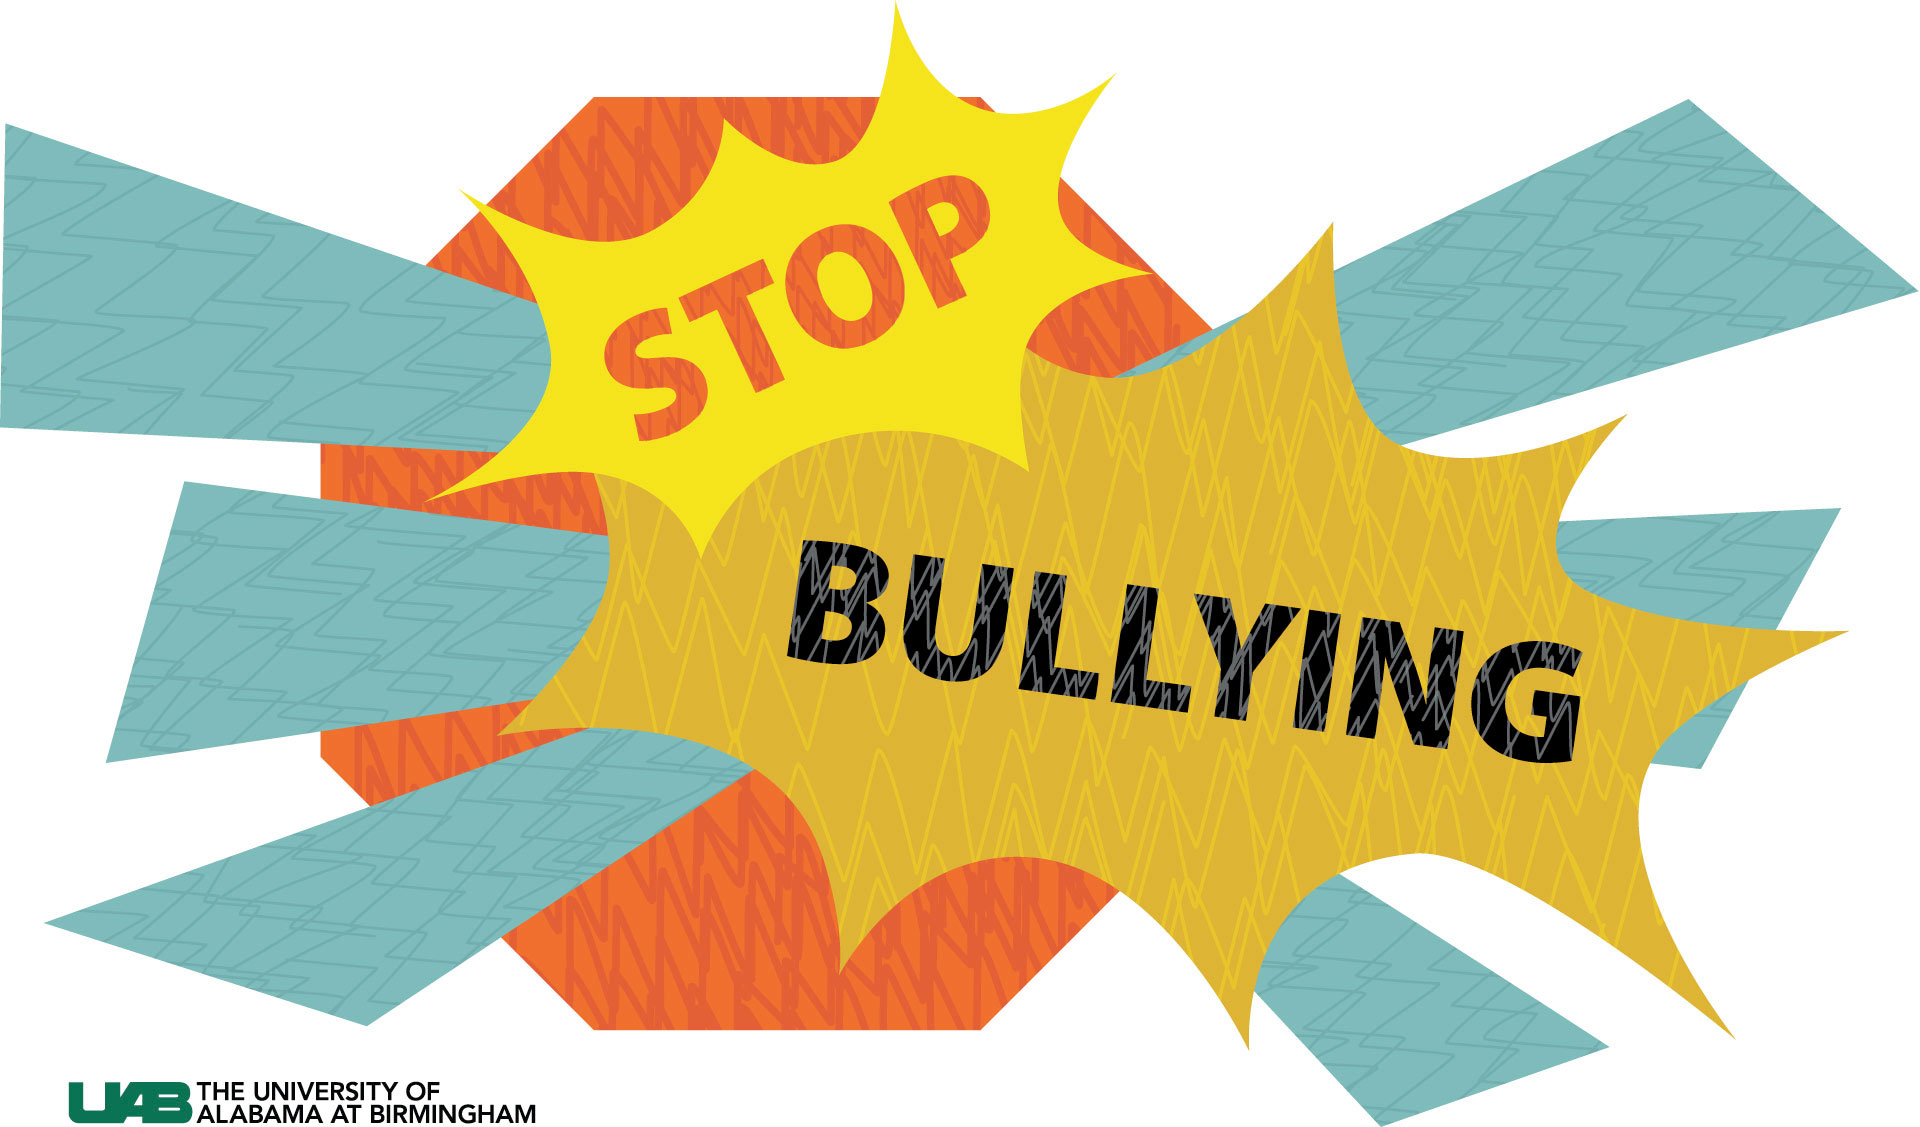 prevent bullying